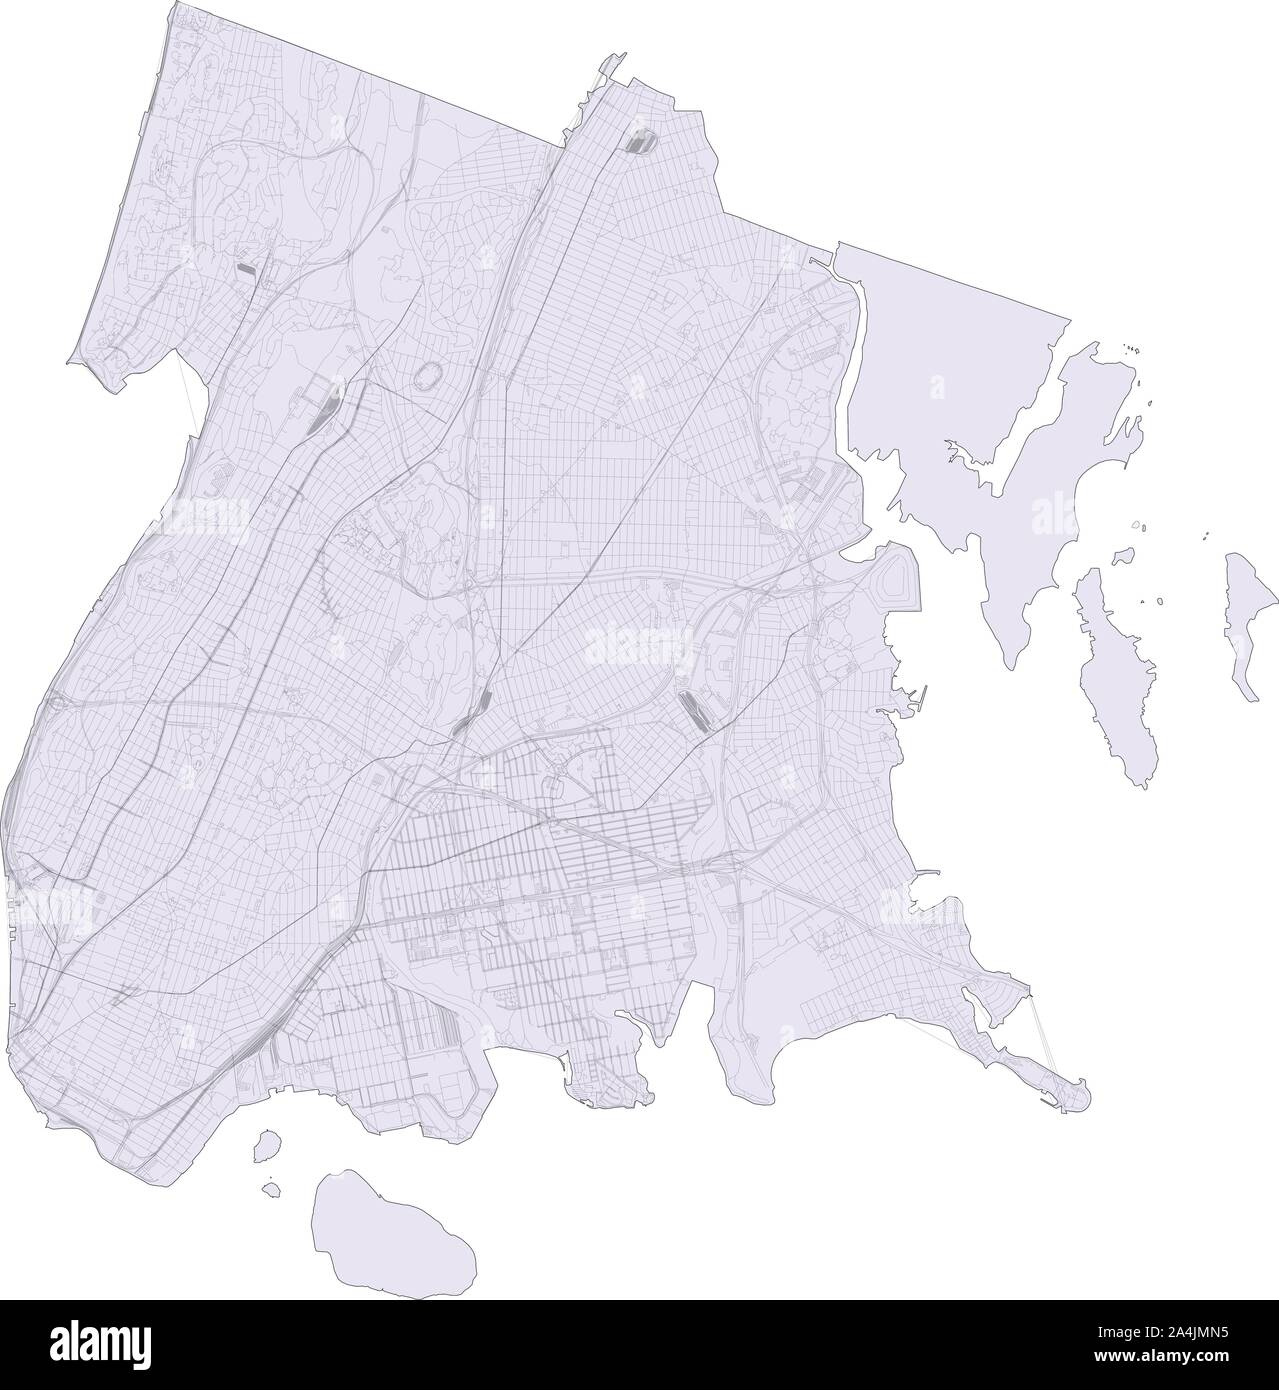 Mappa satellitare di New York City, il Bronx, Stati Uniti d'America. Mappa di strade, tangenziali e autostrade, fiumi, linee ferroviarie. Mappa di trasporto Illustrazione Vettoriale